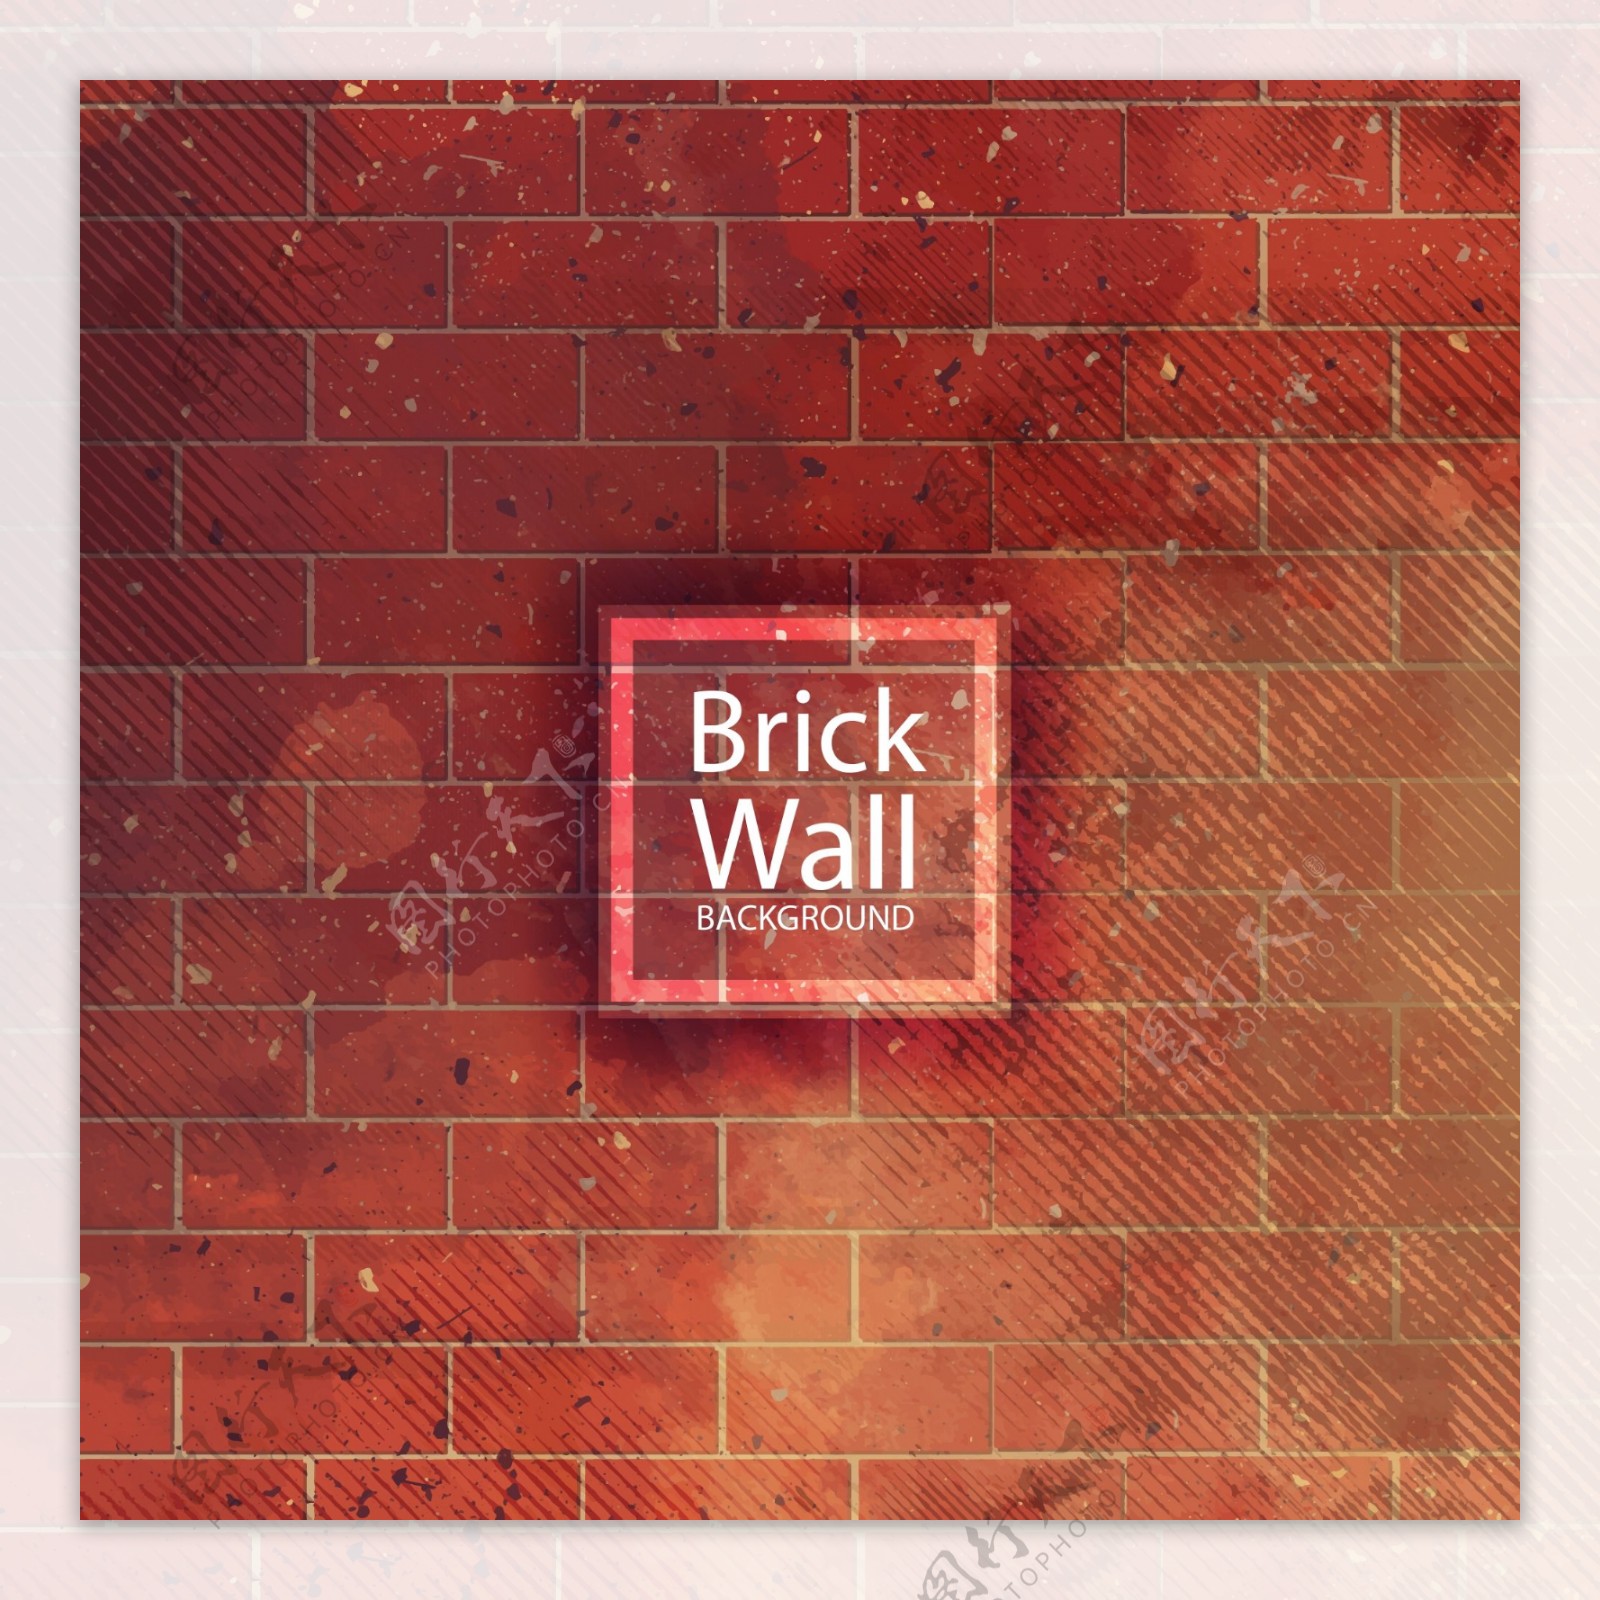 创意红砖墙背景矢量素材